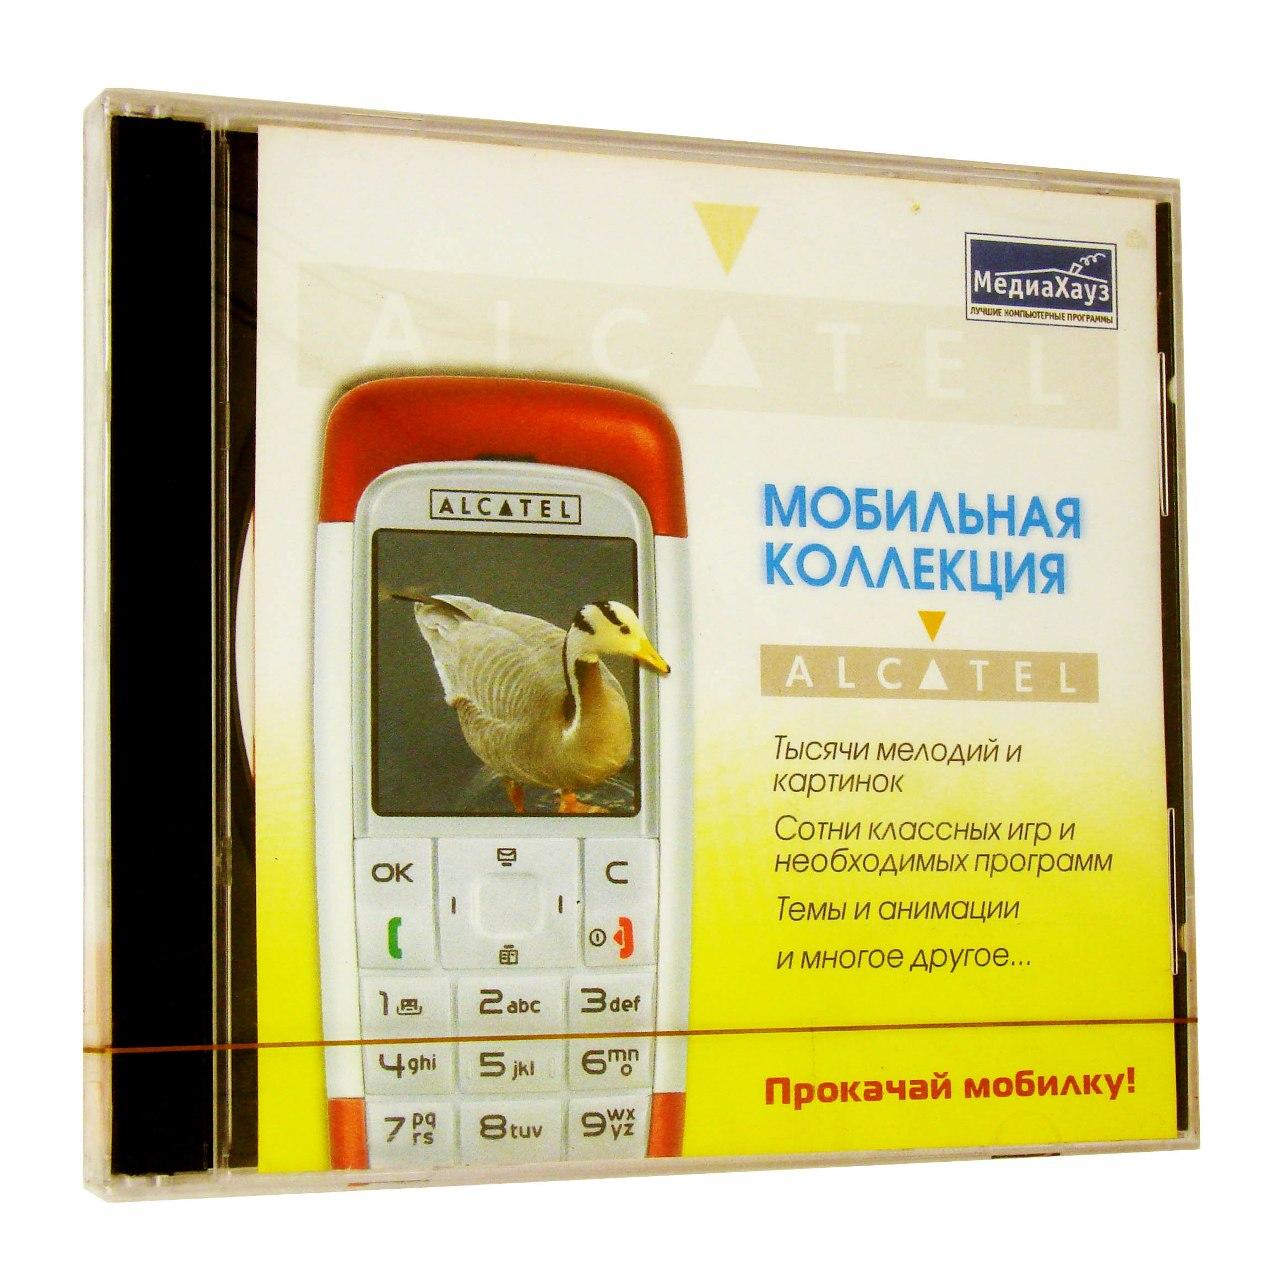 Компьютерный компакт-диск Мобильная коллекция. Alcatel (PC), Фирма "МедиаХауз", 1CD